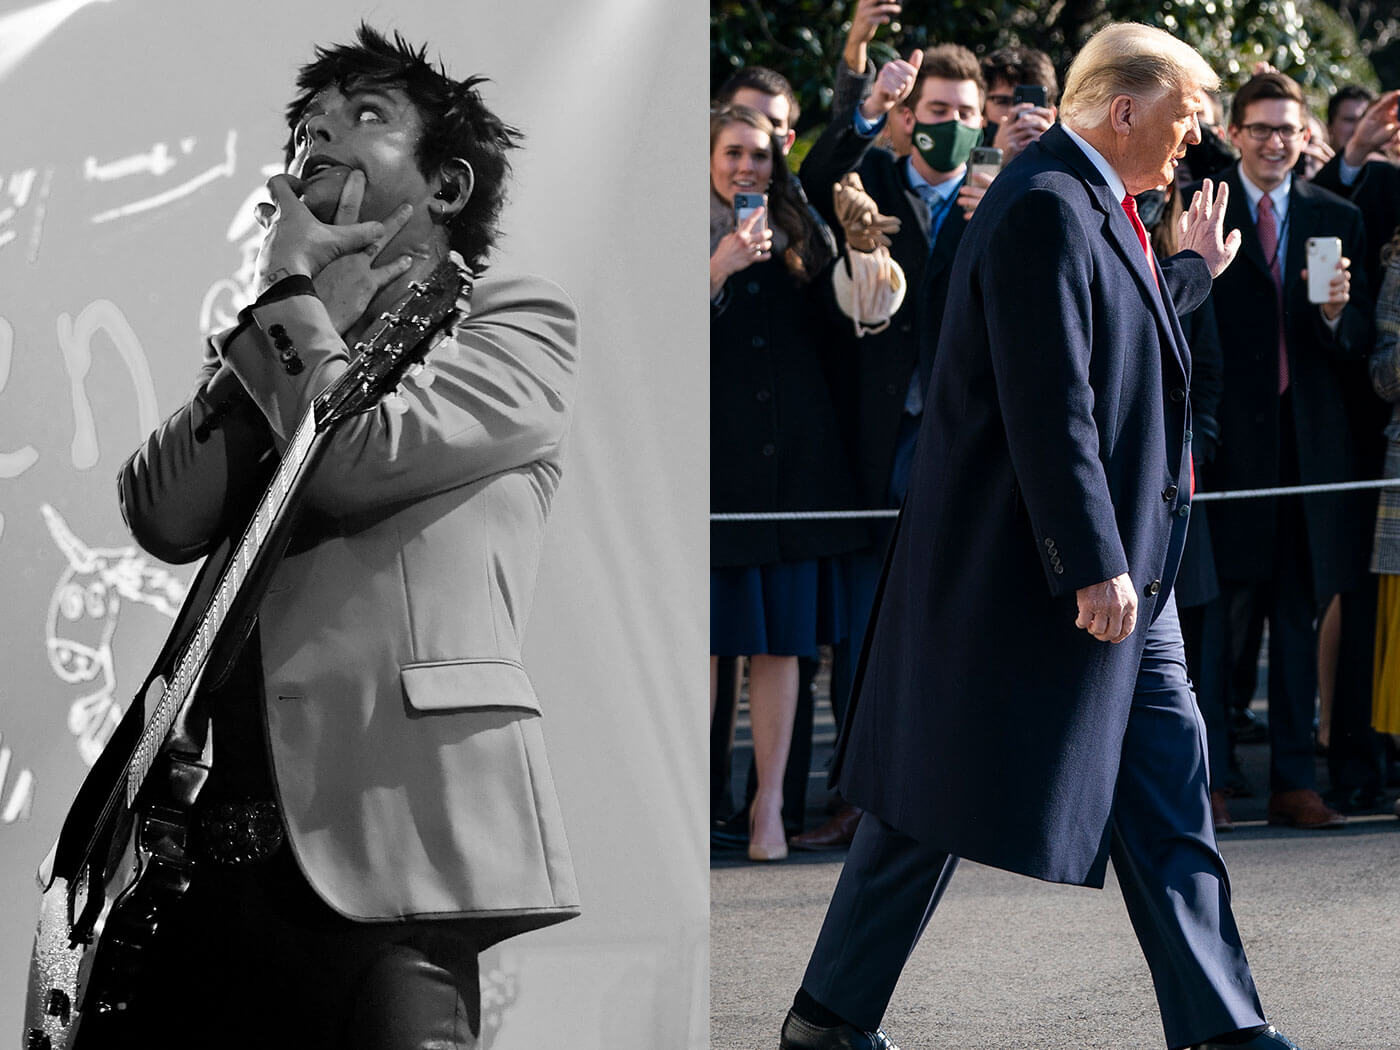 Billie Joe Armstrong and Donald Trump